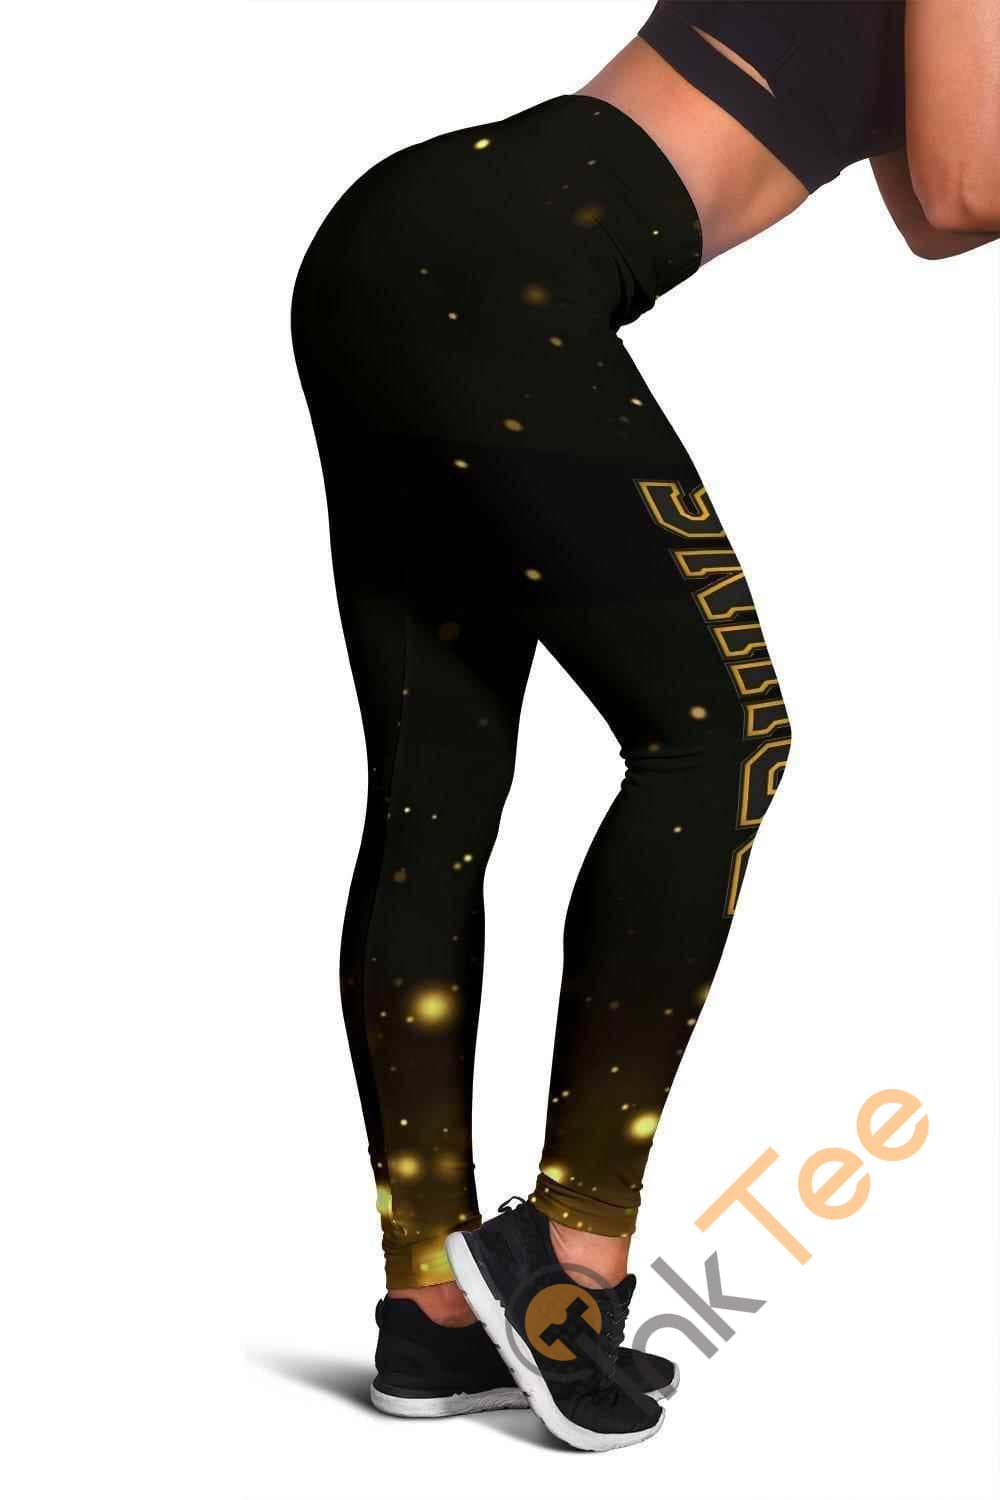 Inktee Store - Boston Bruins 3D All Over Print For Yoga Fitness Women'S Leggings Image